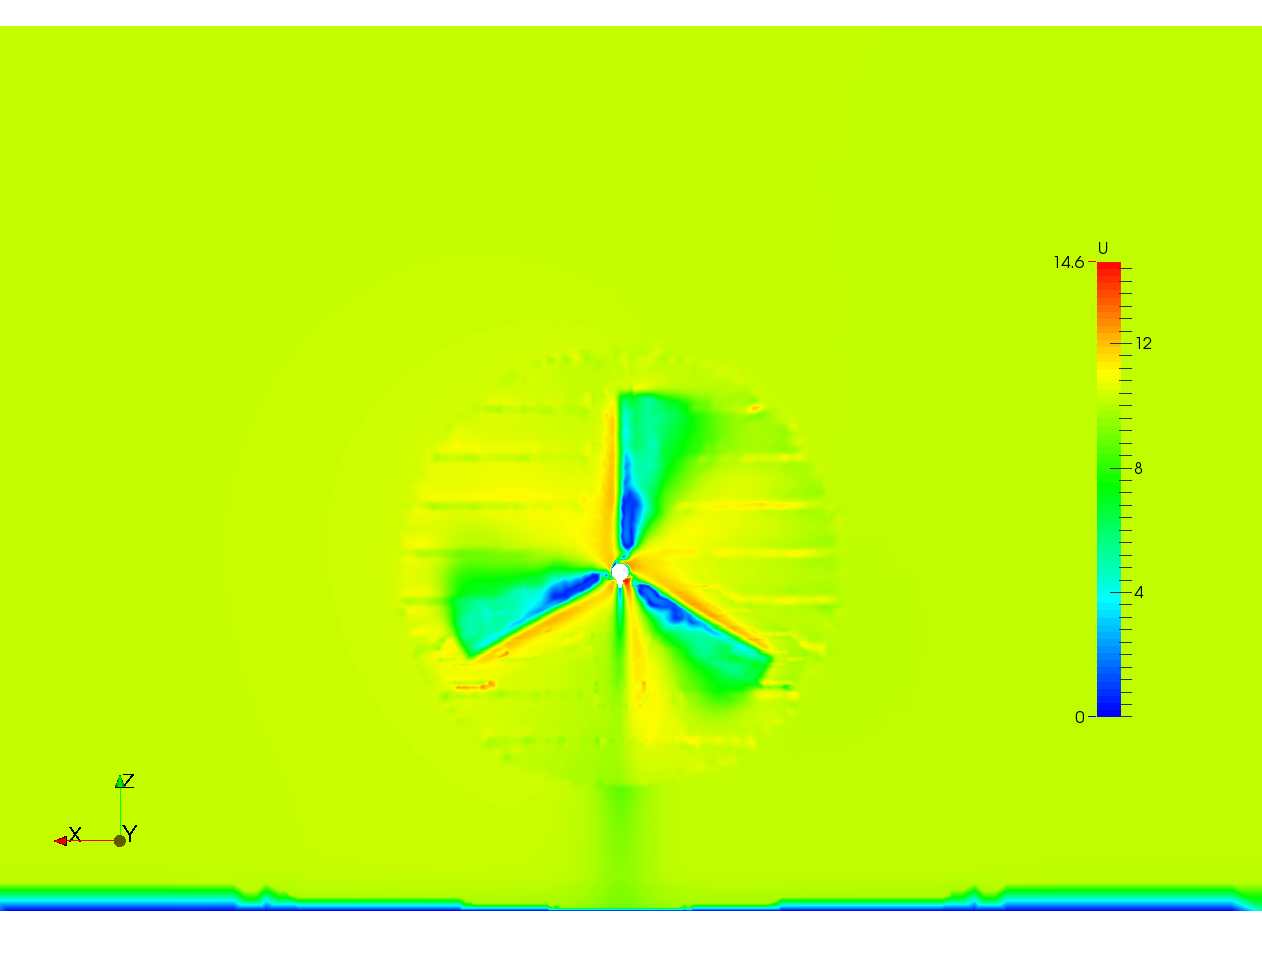 Turbine simulation image